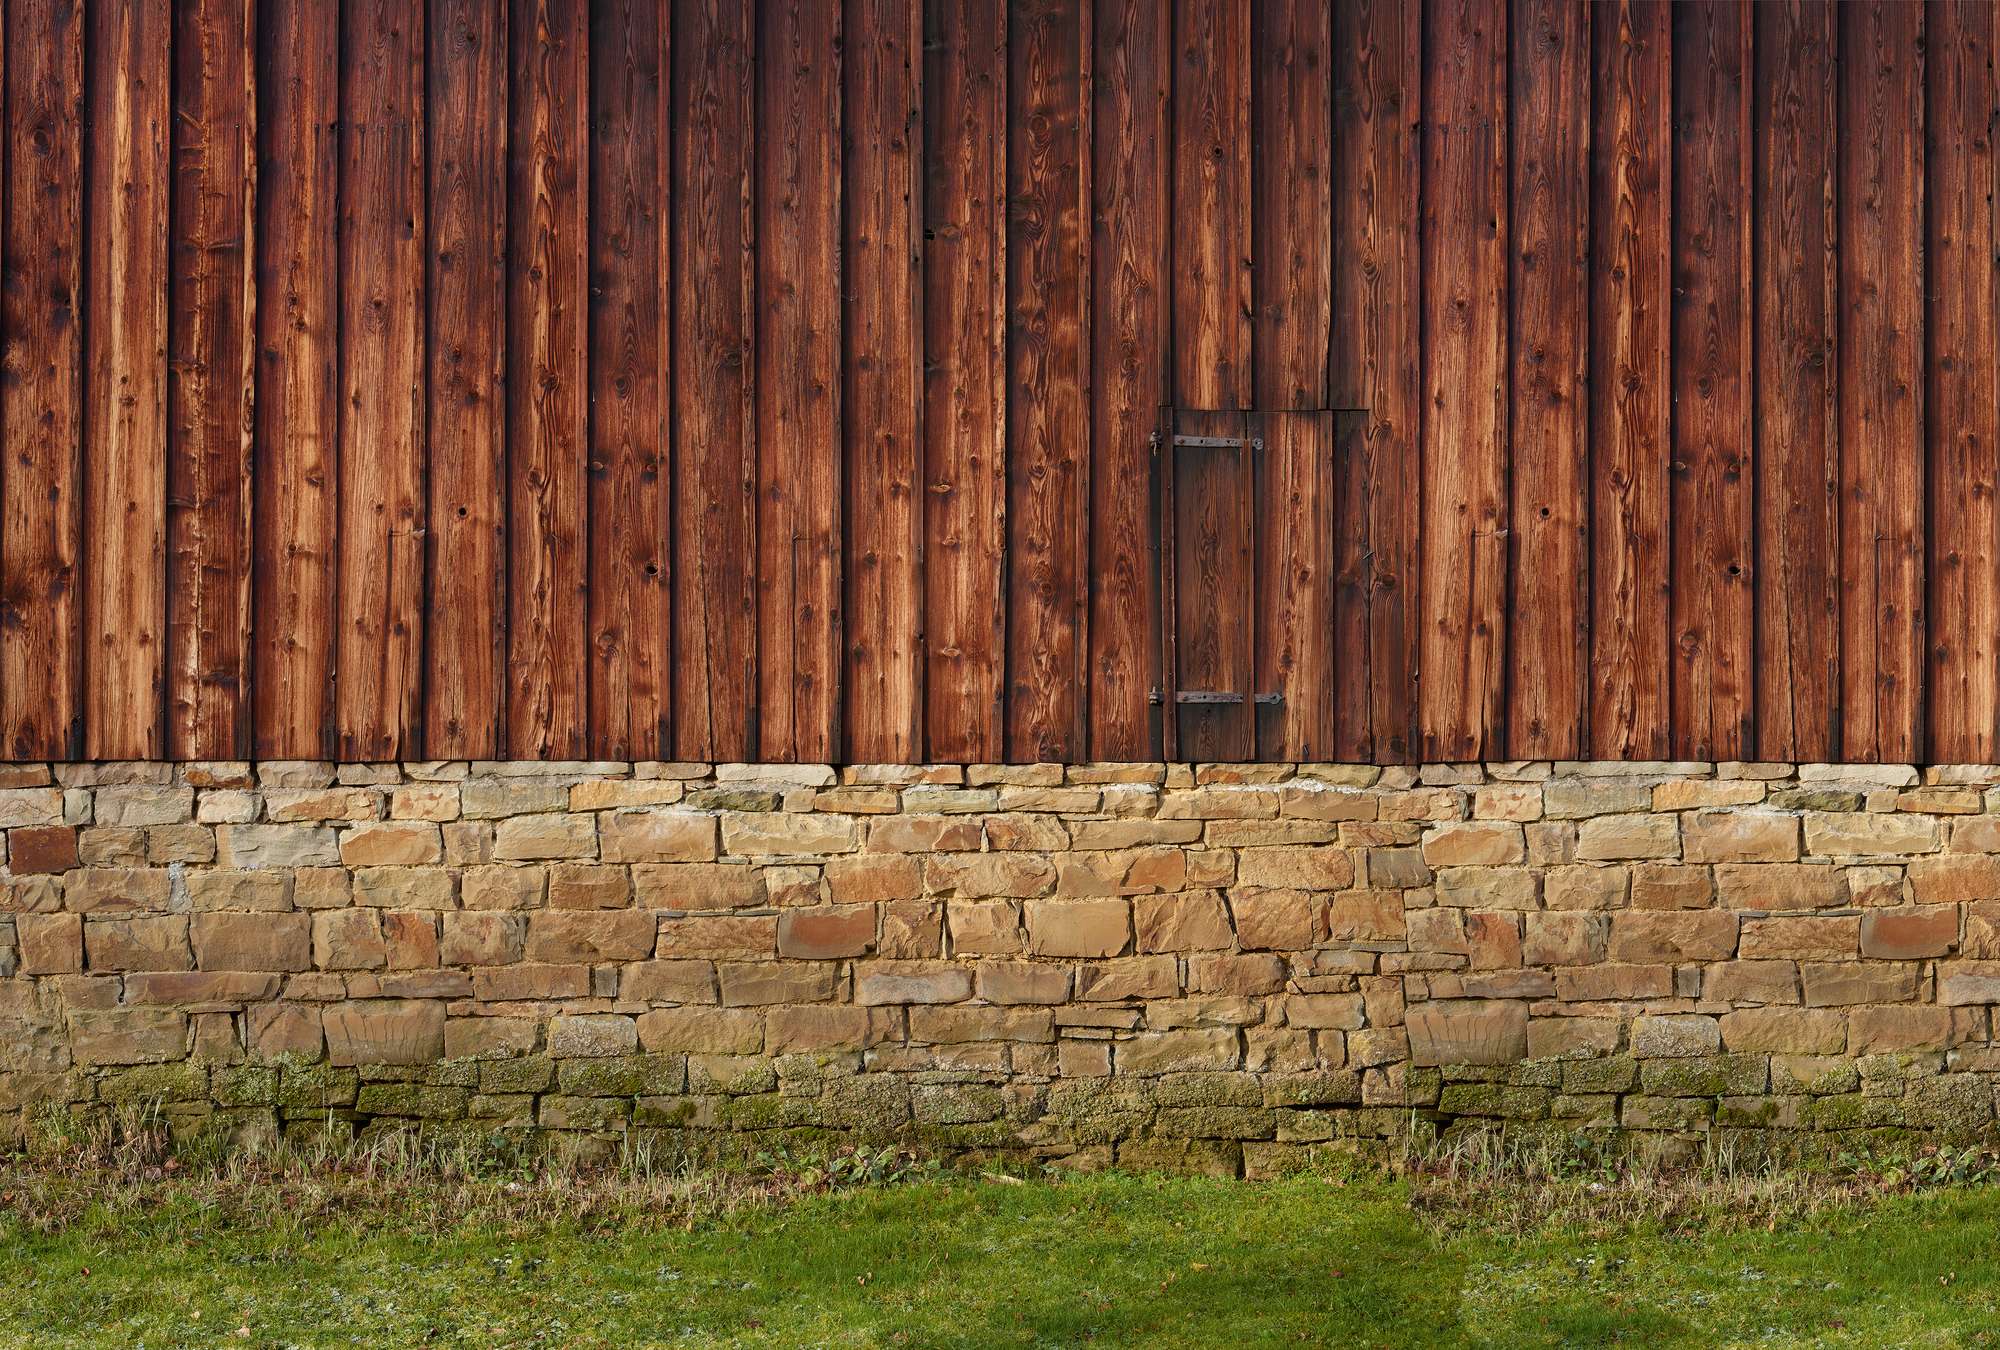             Carta da parati fotografica con facciata in legno e parete in pietra naturale
        